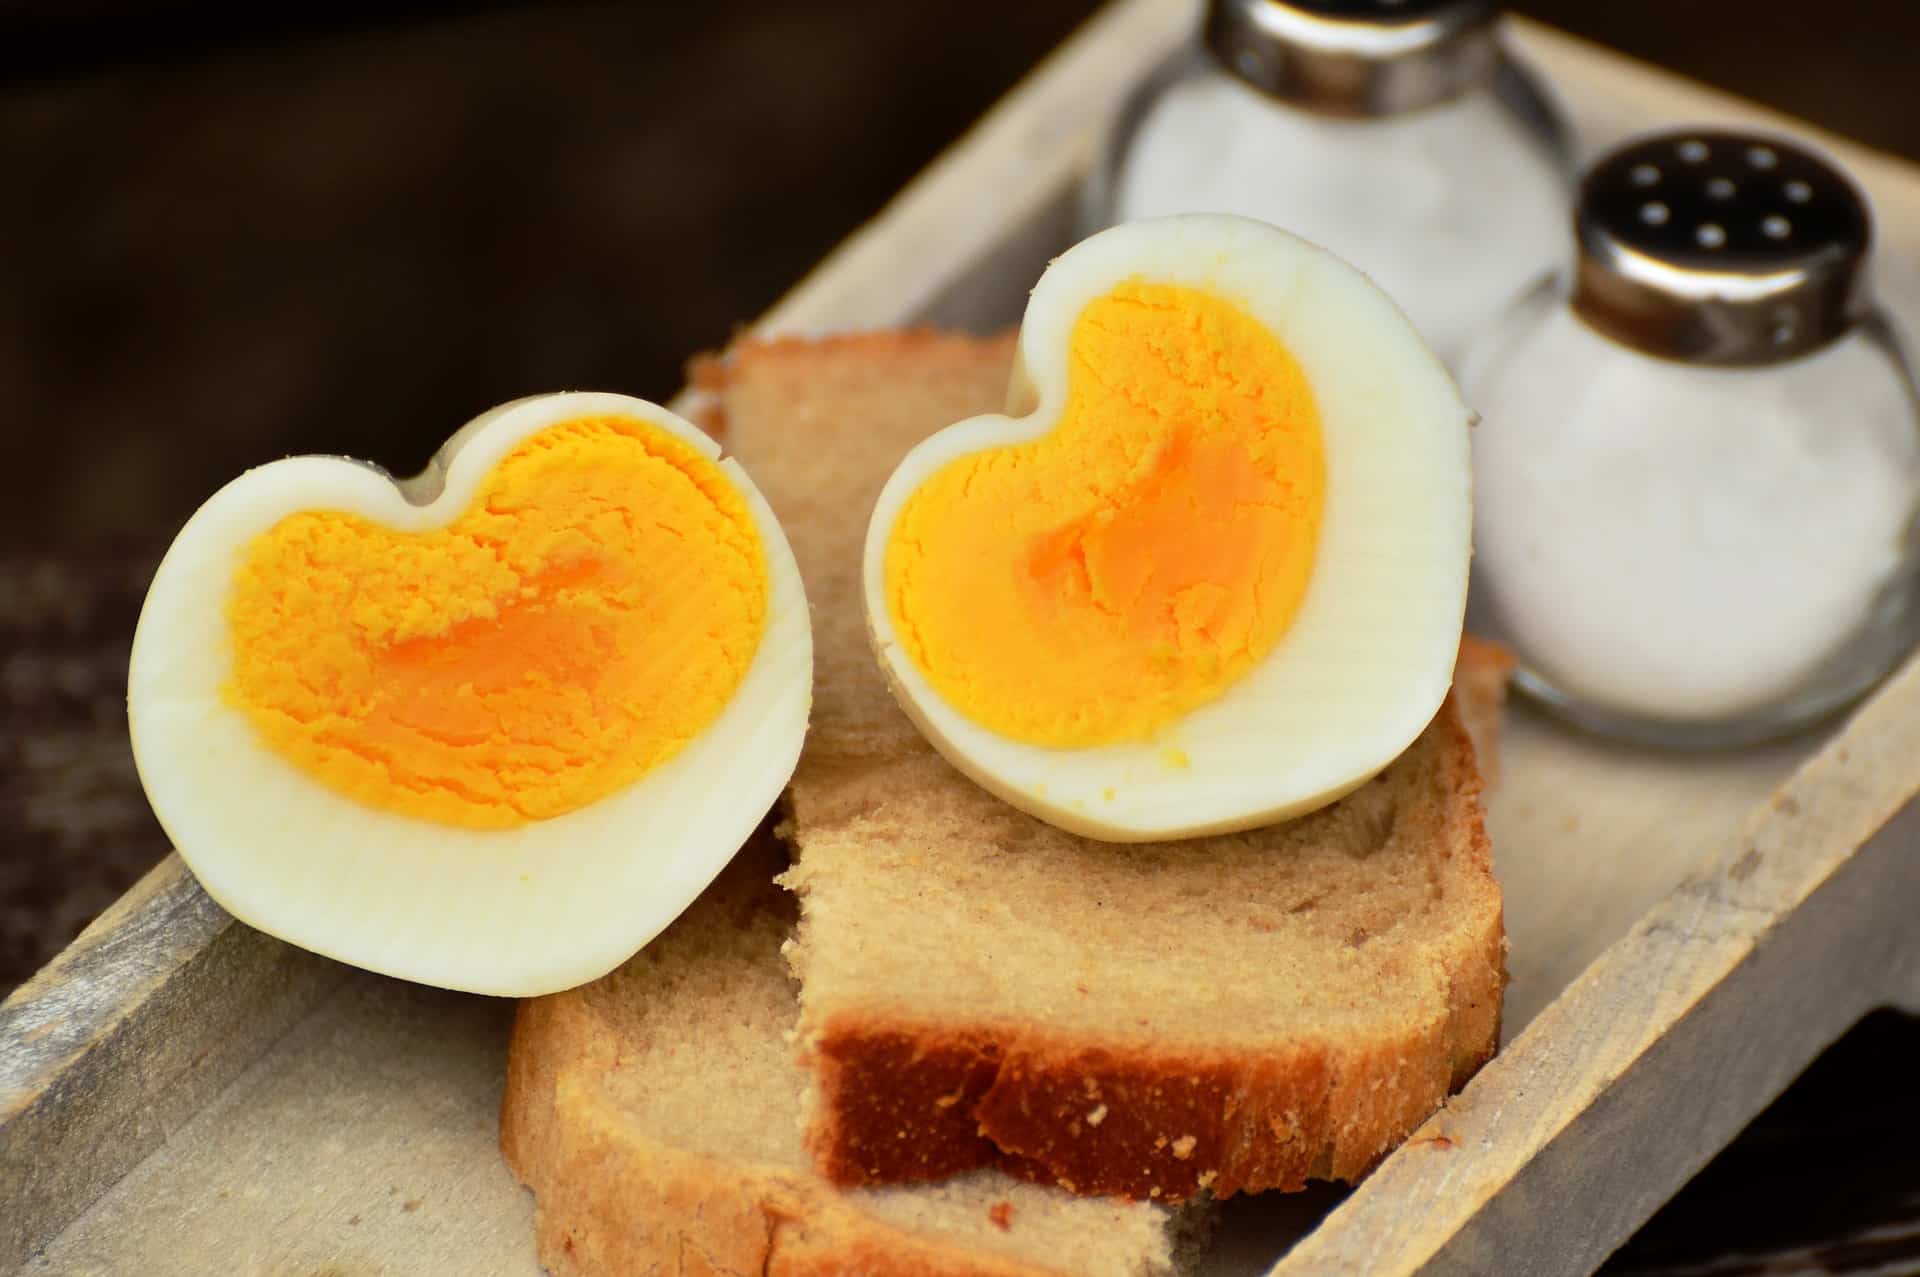 Proč natvrdo vařený vaječný žloutek mění barvu?